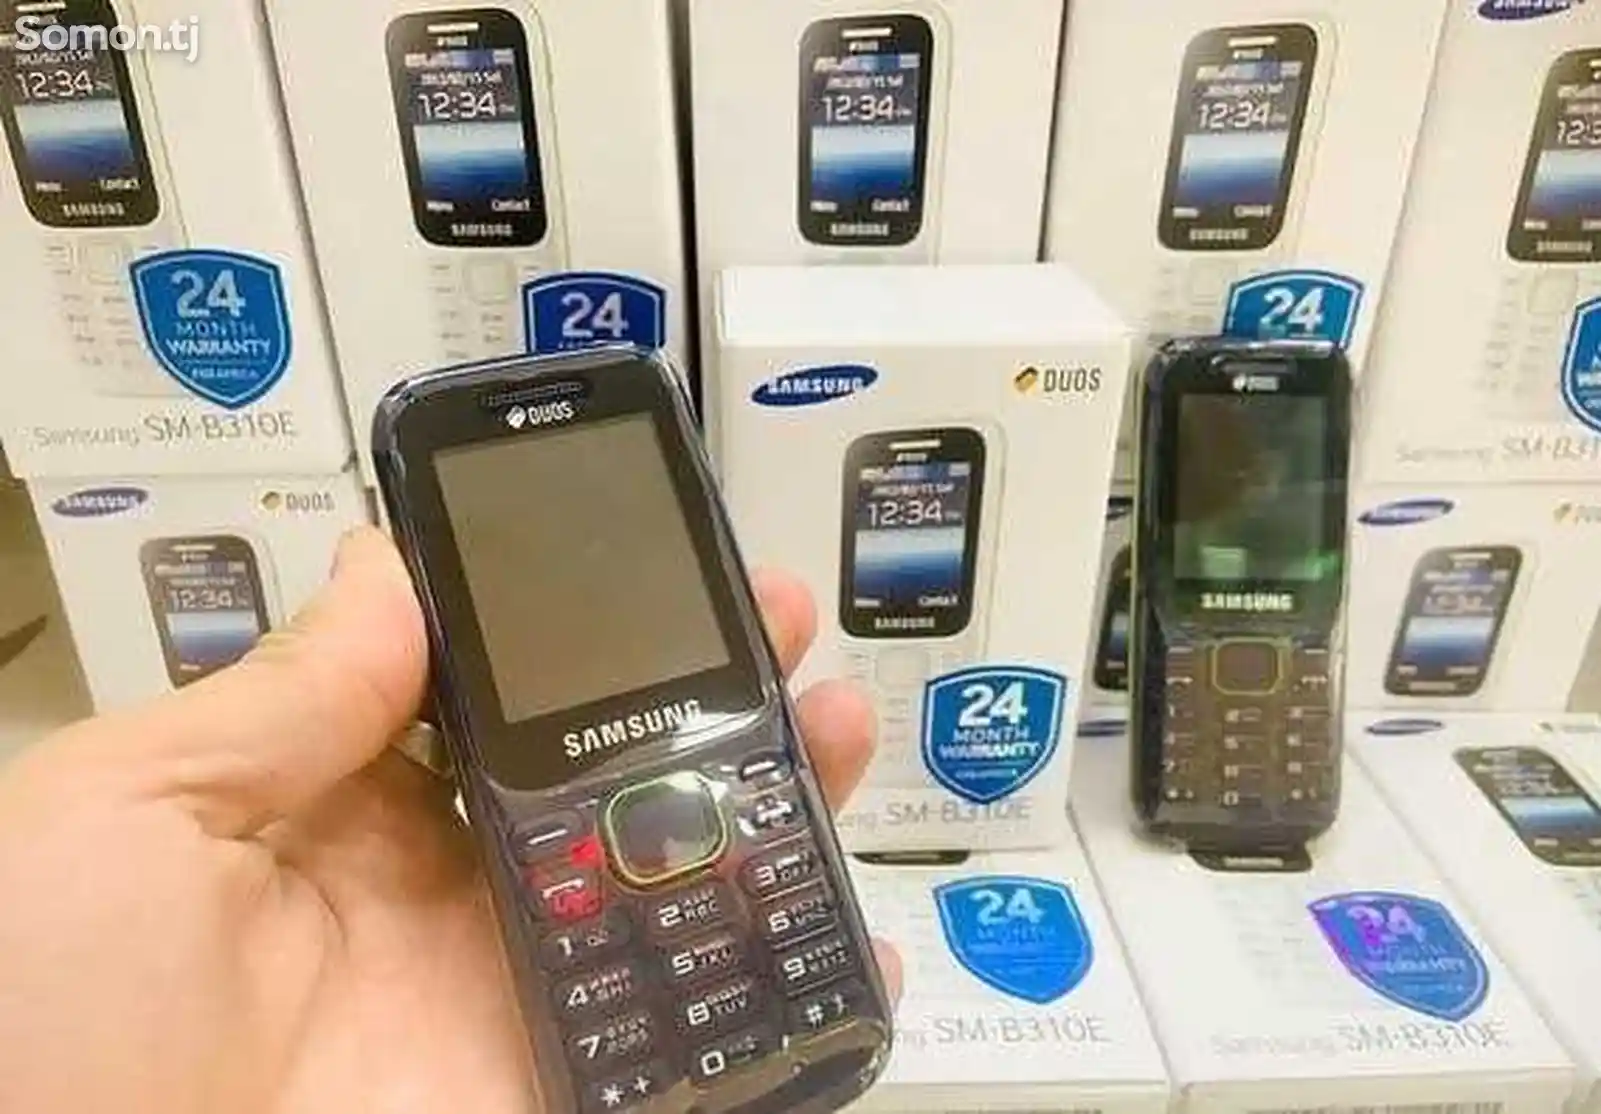 Samsung B310E-5